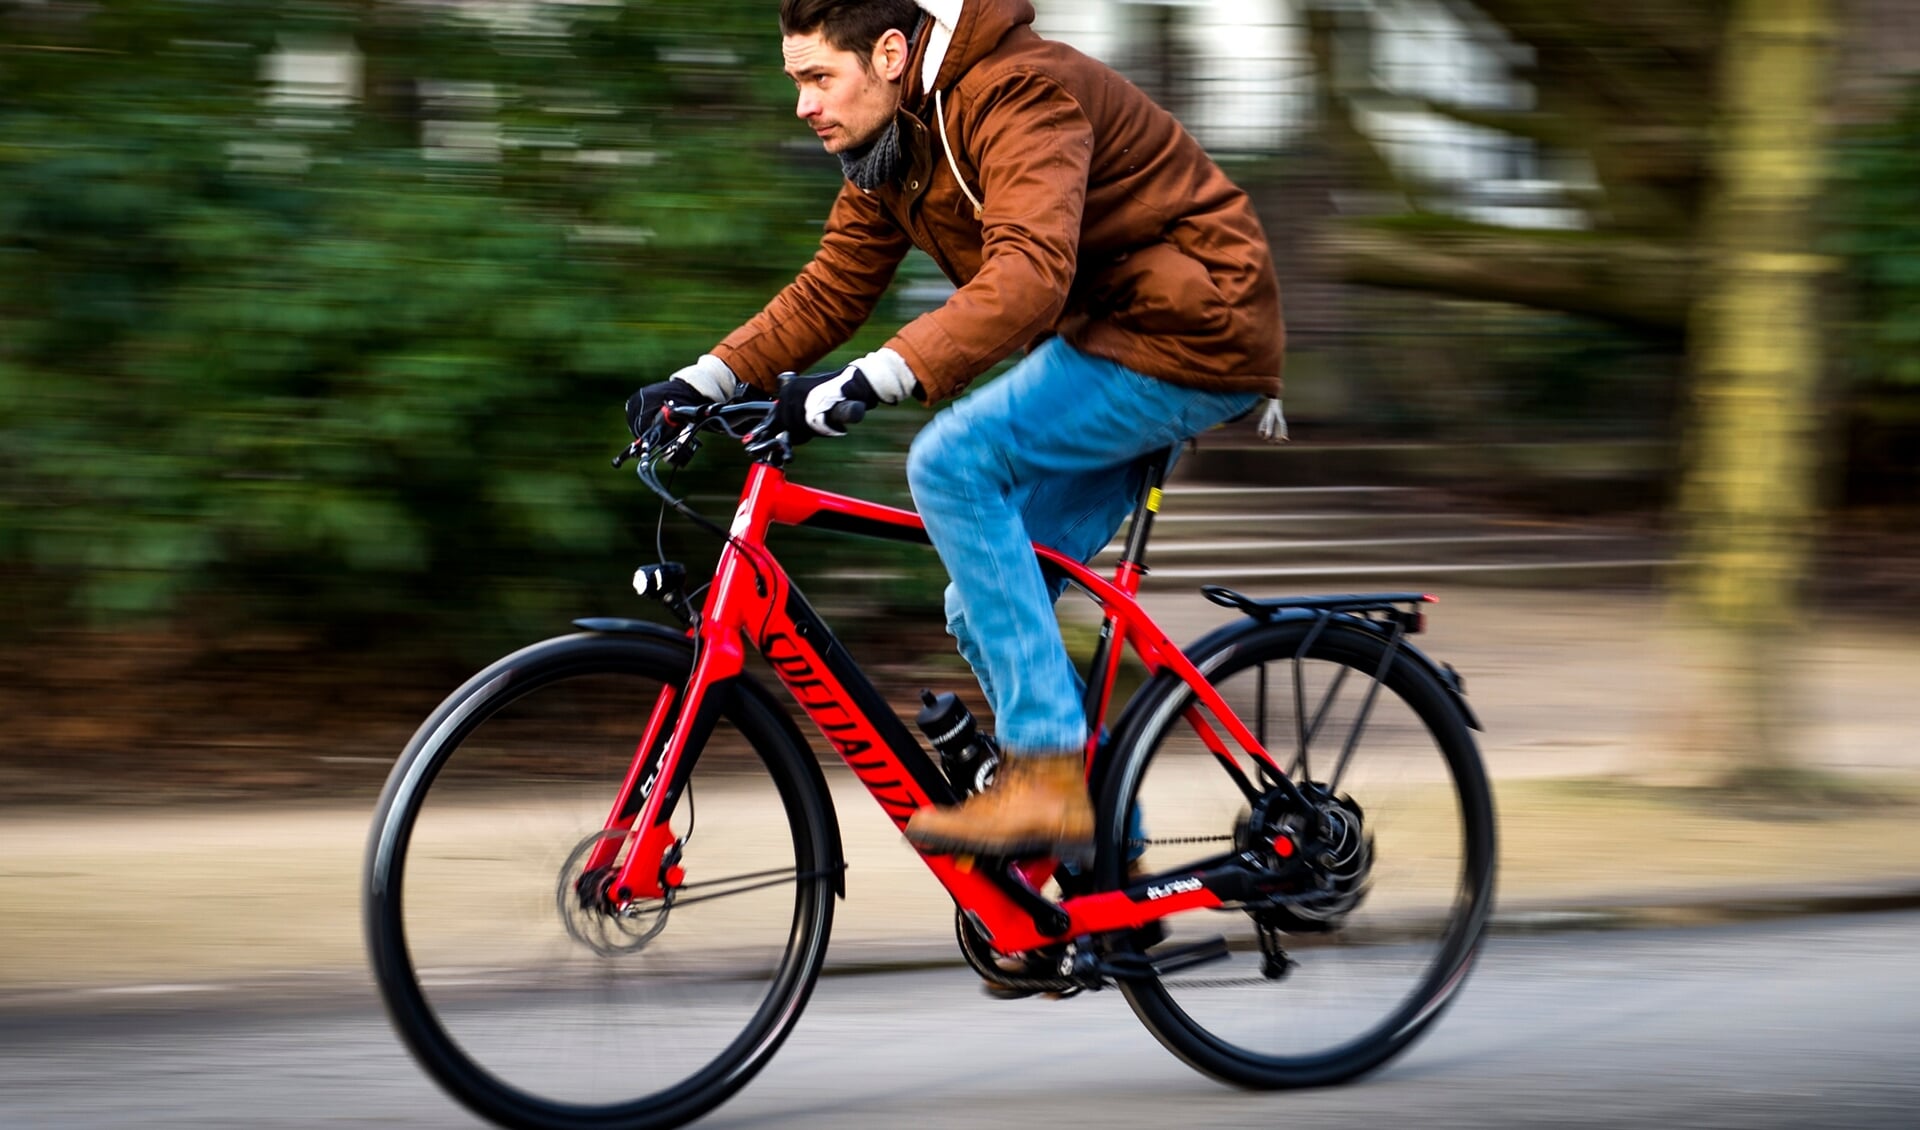 Opmars elektrische fietsen zorgt voor extra drukte en risico's - Houtens Nieuws | Nieuws uit de regio